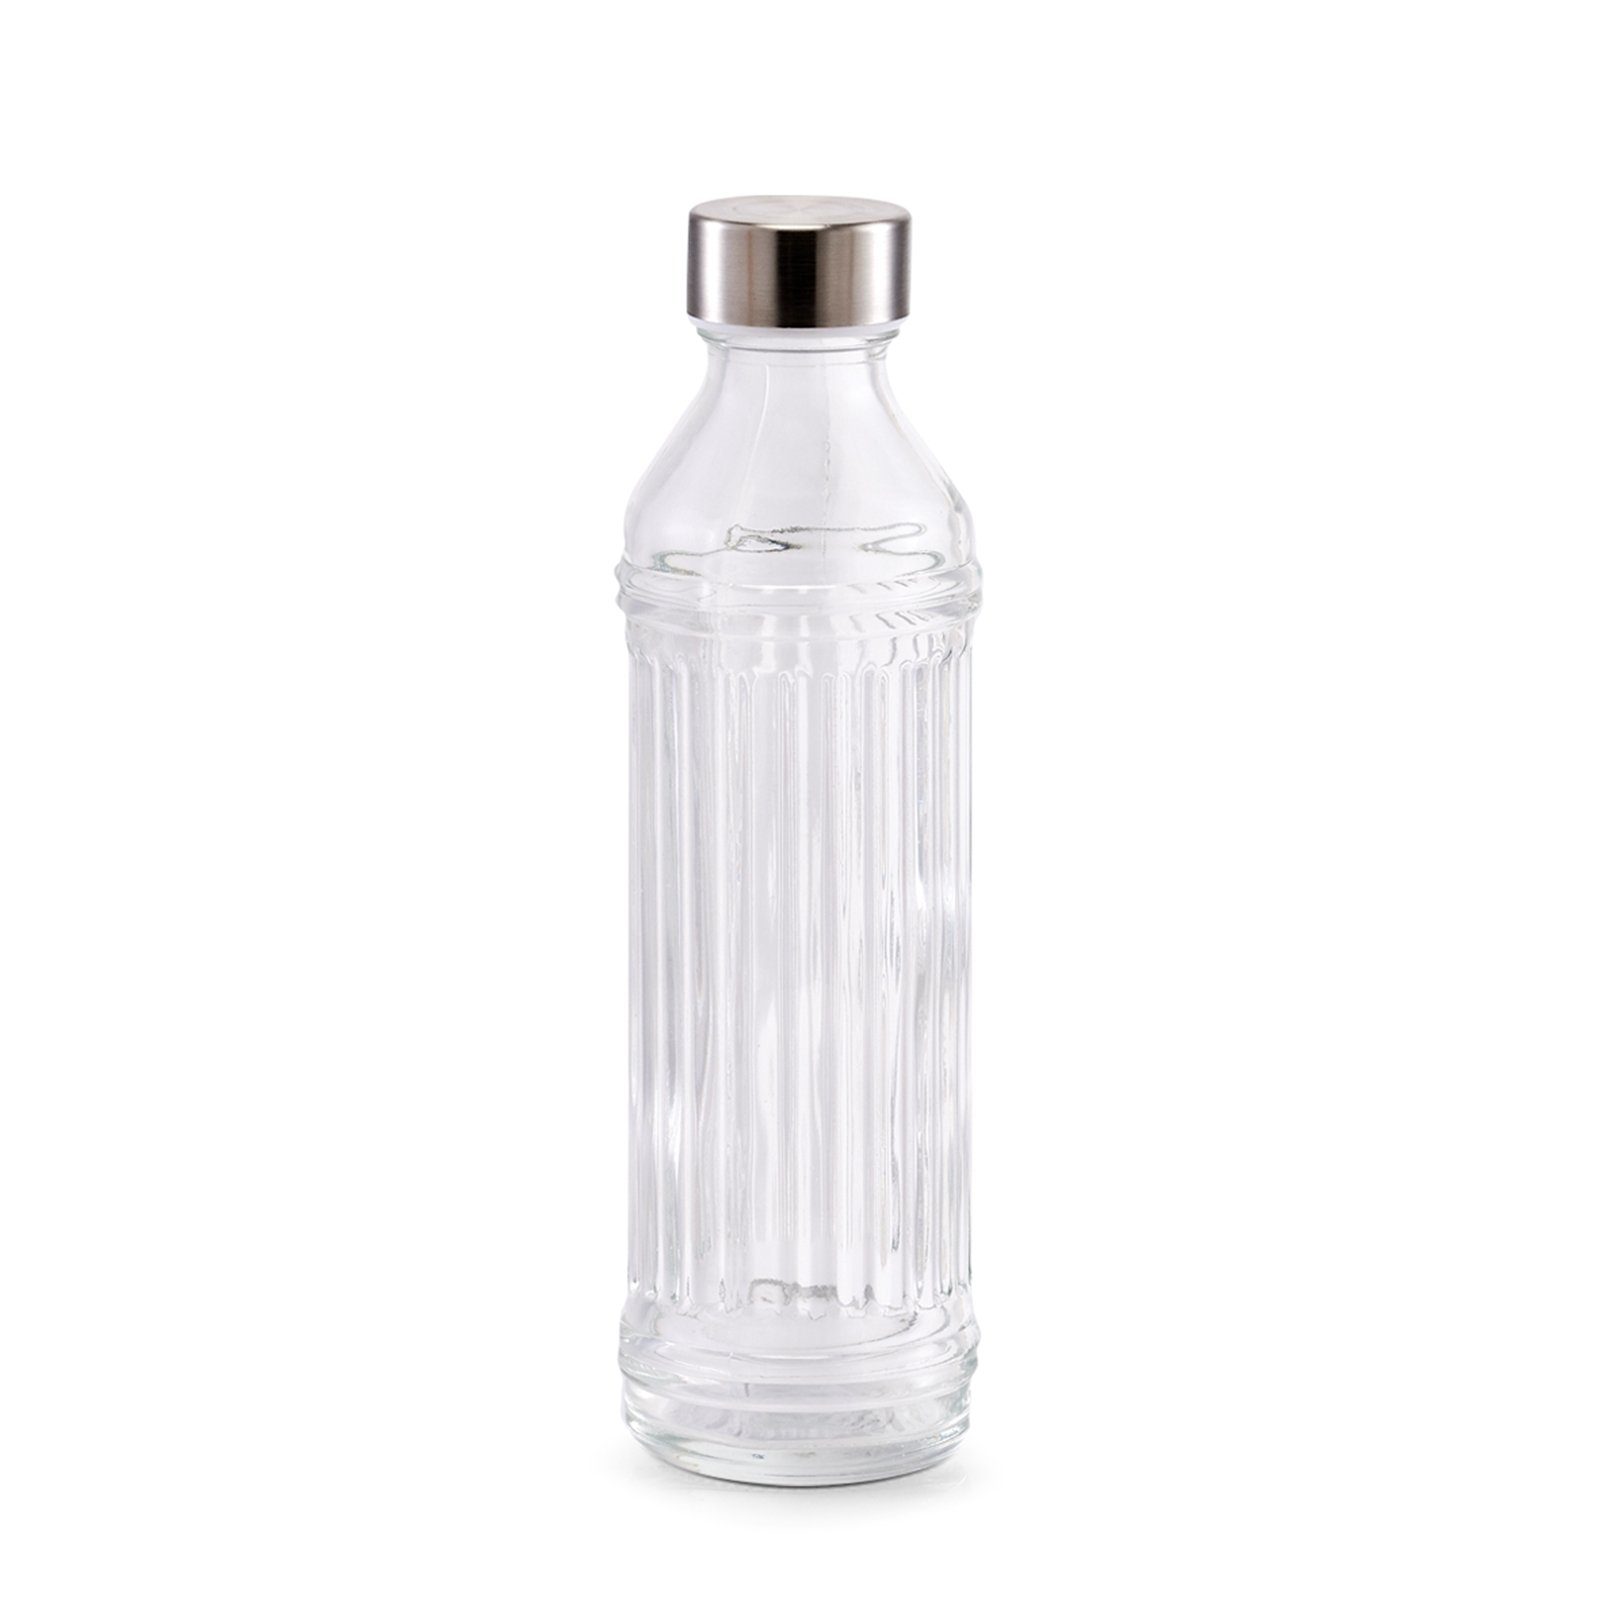 Sehr beliebt zu niedrigen Preisen Neuetischkultur Vorratsglas Glasflasche, 500 ml Glas Rillenprägung